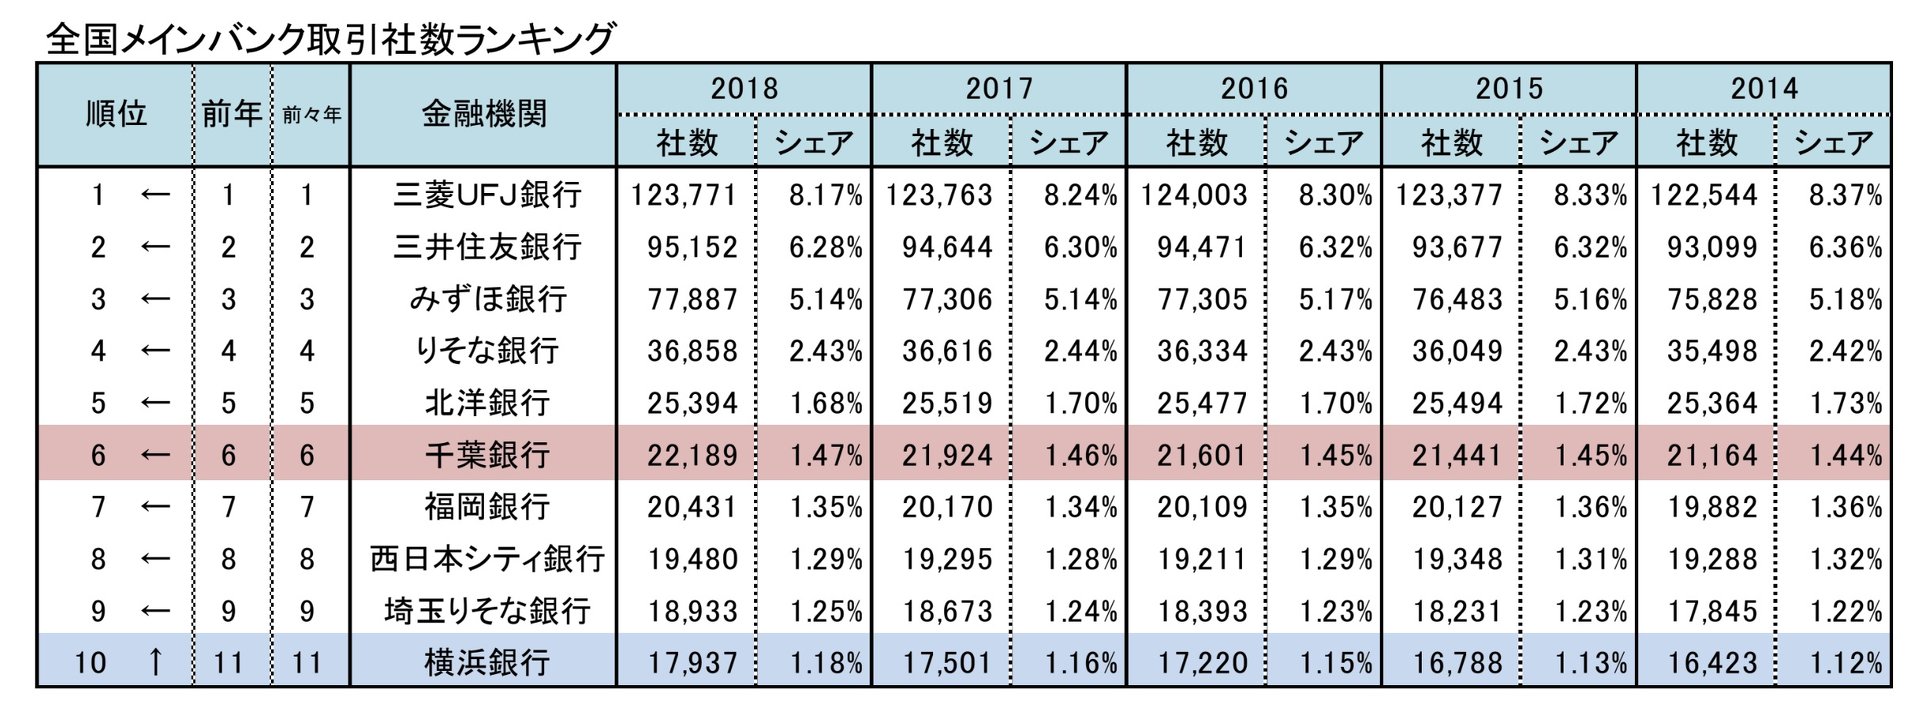 横浜銀行と千葉銀行が提携へ　メインバンク数は3メガに次ぐ4位に